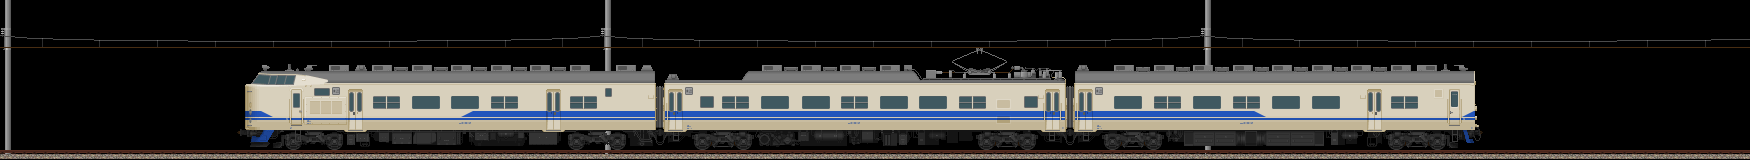 419系近郊形電車(新北陸色)